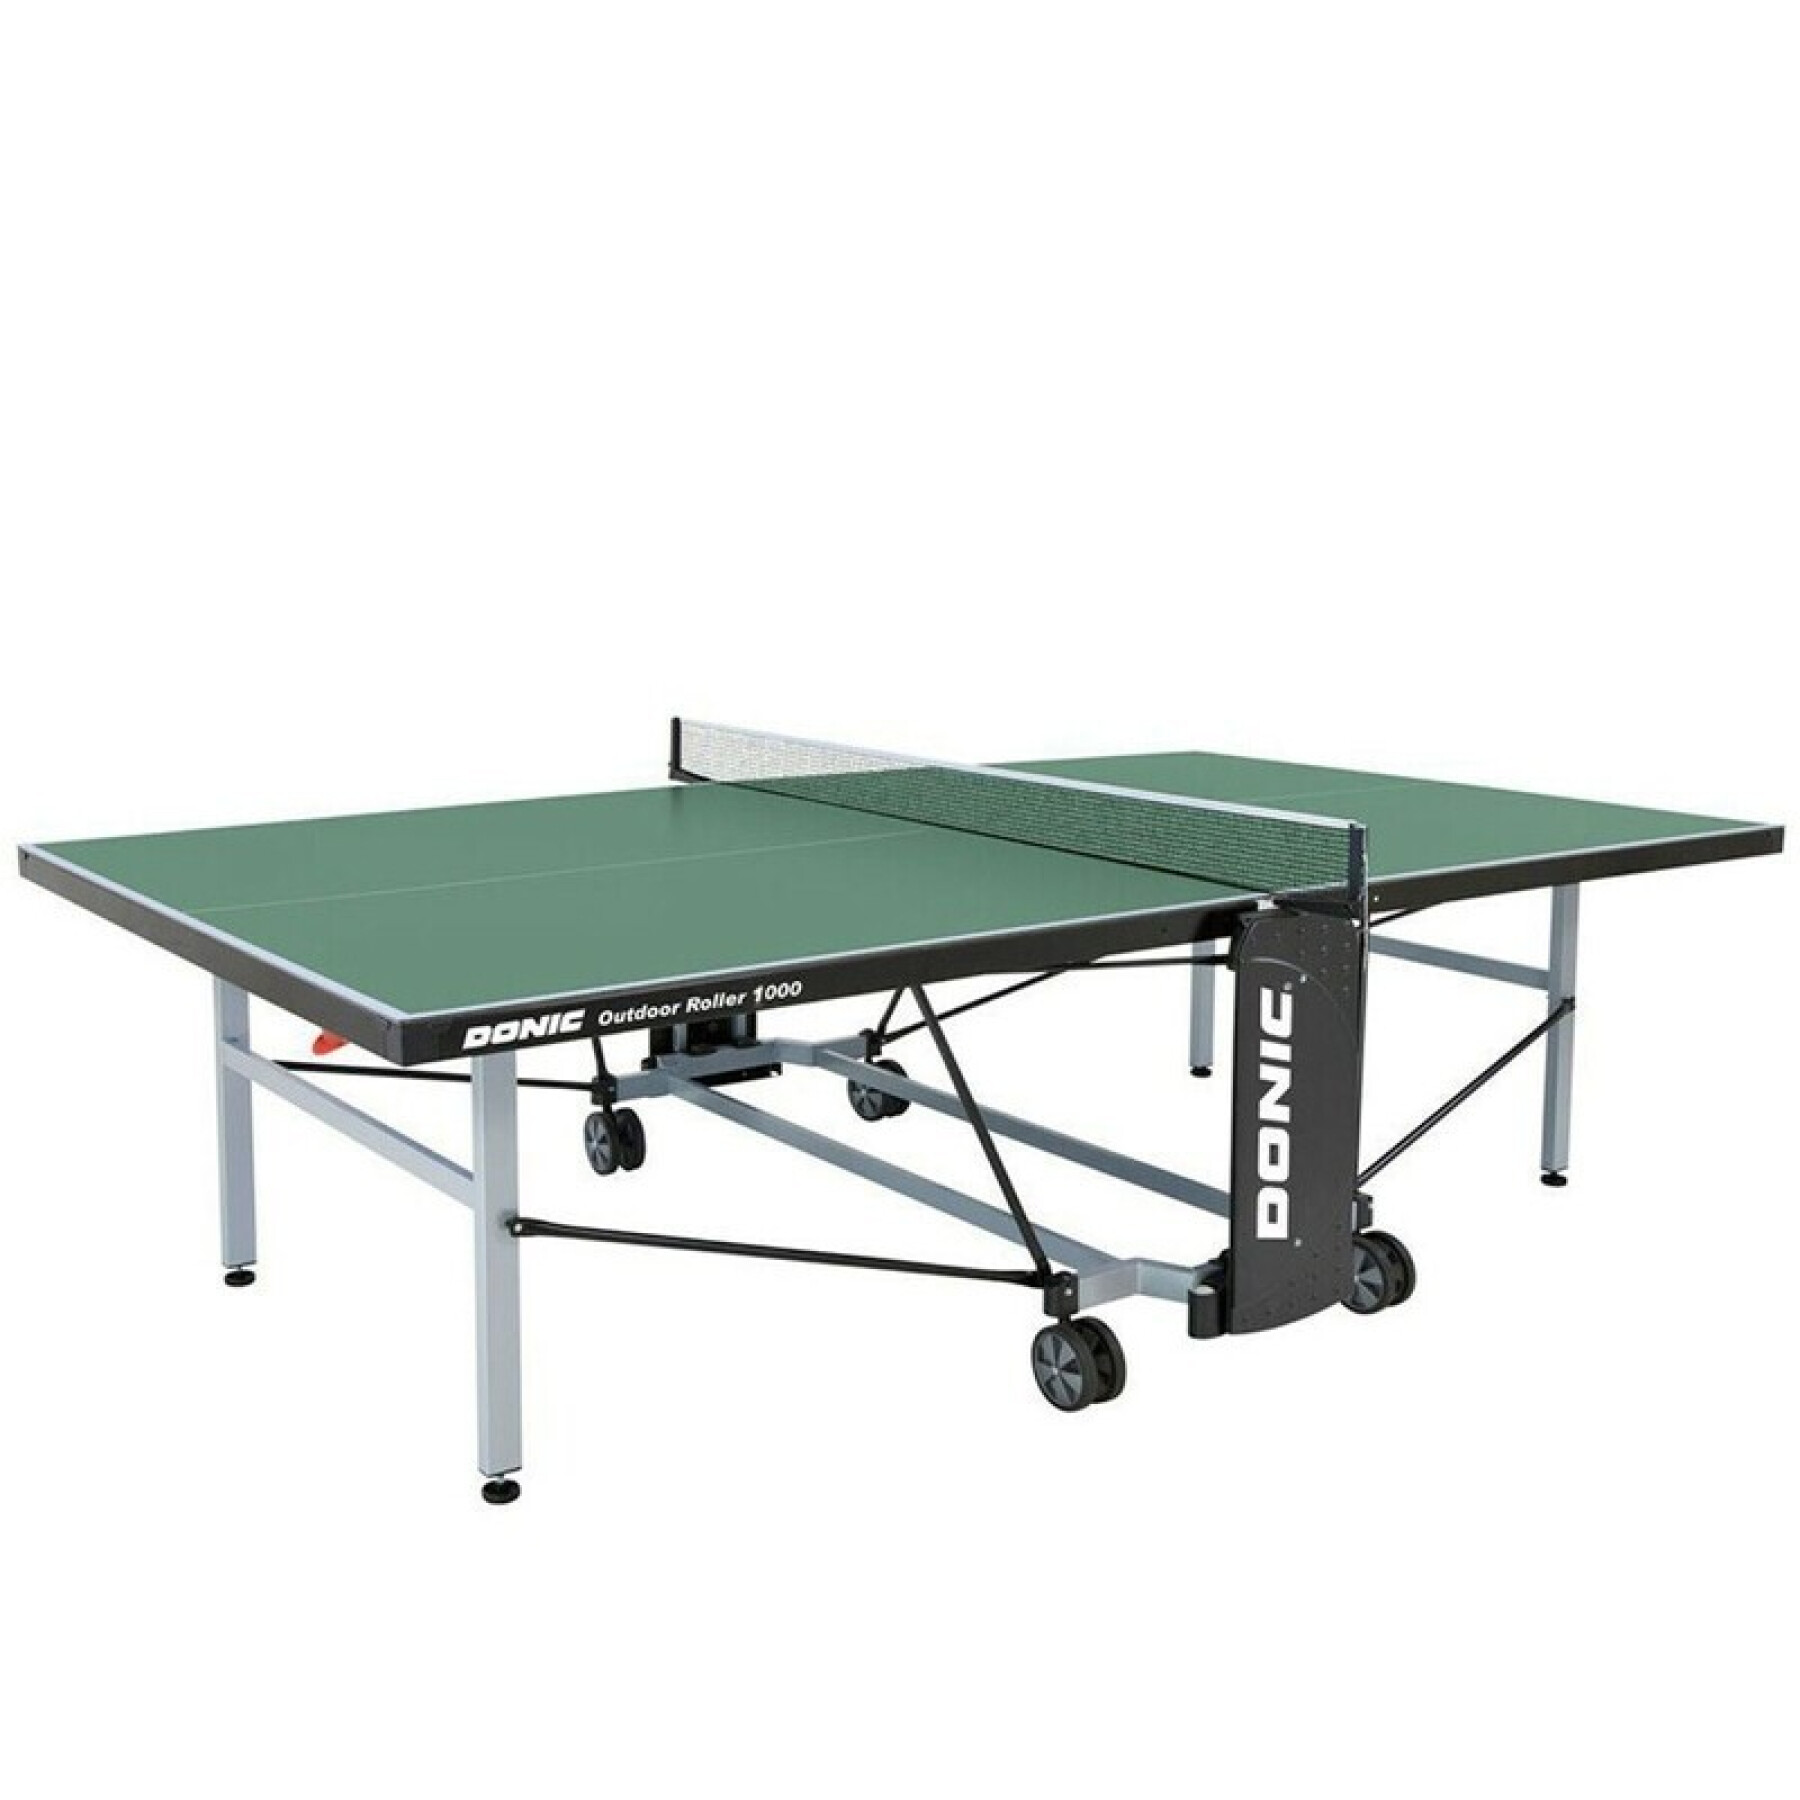 Mesa de ping-pong de exterior resistente a la intemperie con ruedas y red Donic 1000